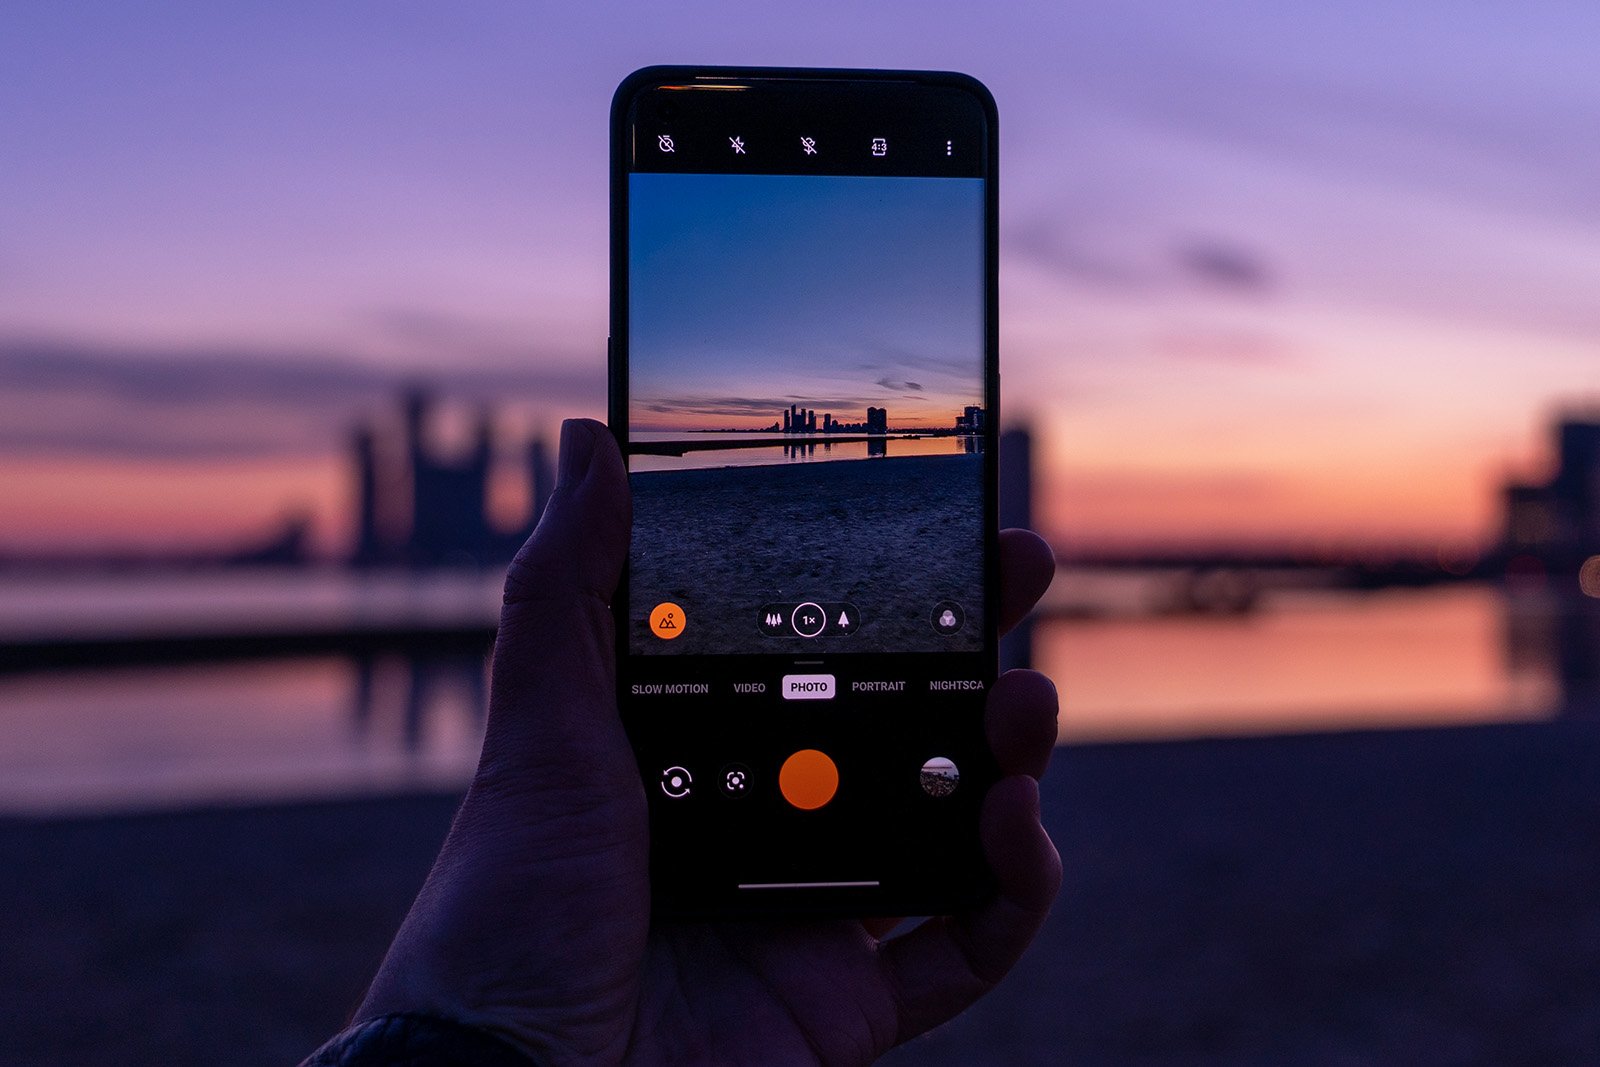 OnePlus-9-Pro-shooting-photos.jpg